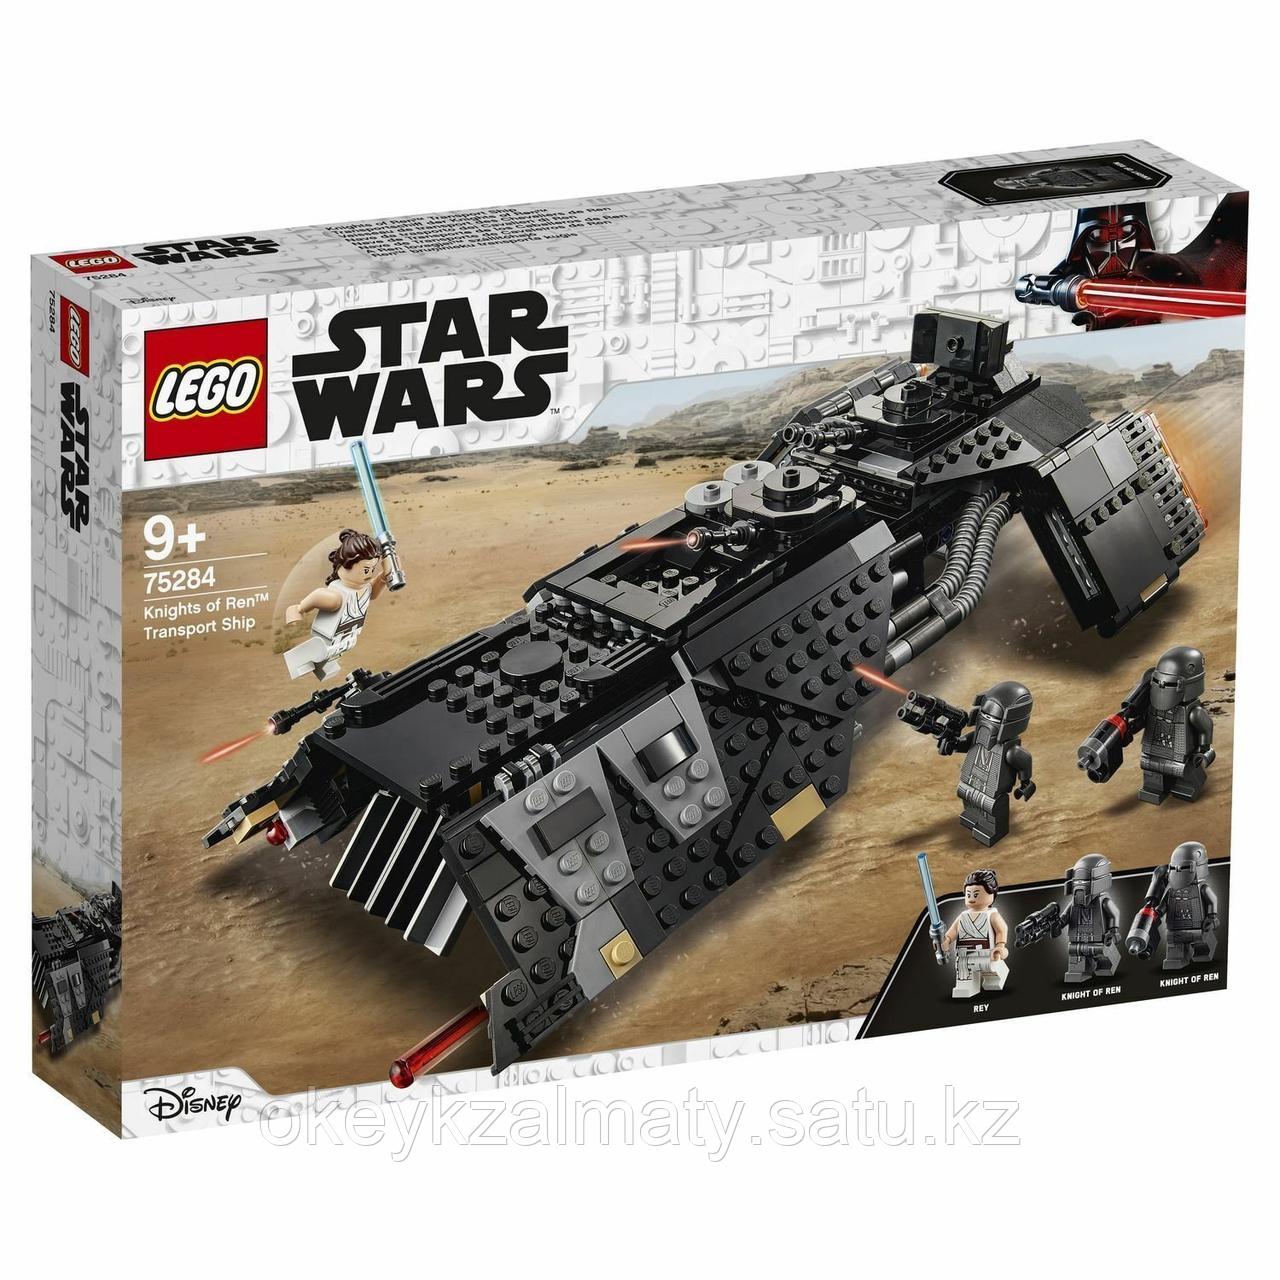 LEGO Star Wars: Транспортный корабль рыцарей Рена 75284